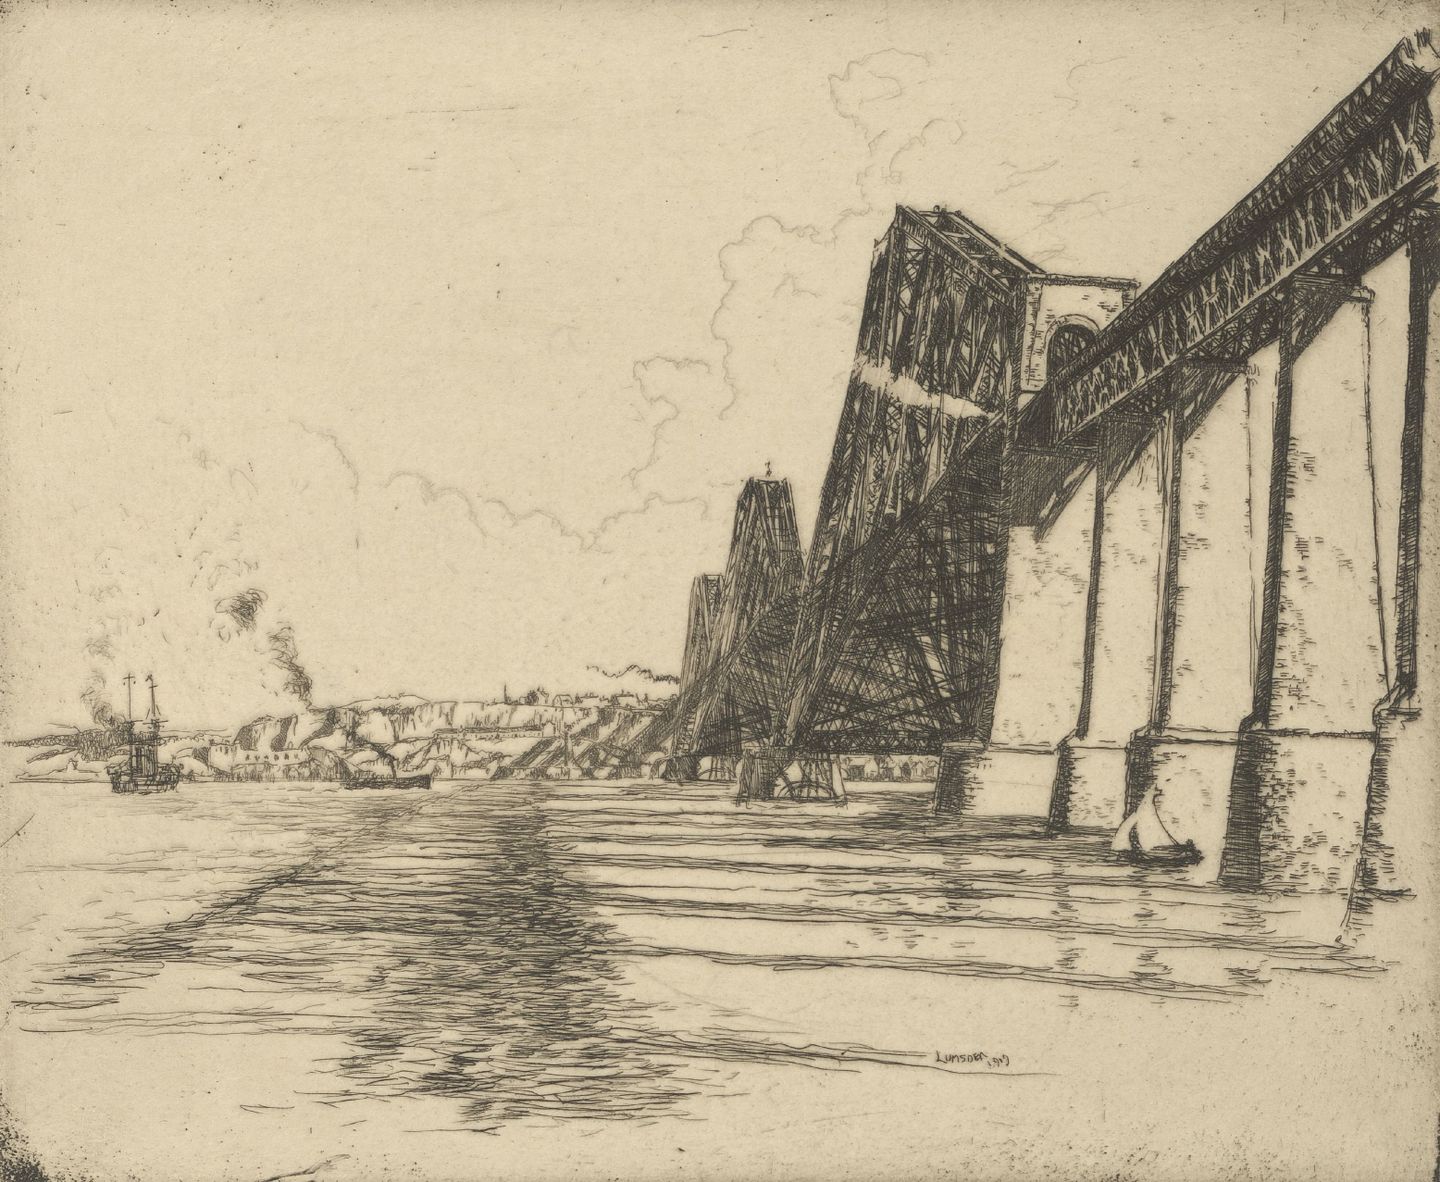 Ernest Stephen Lumsden, Forth Bridge, 1909